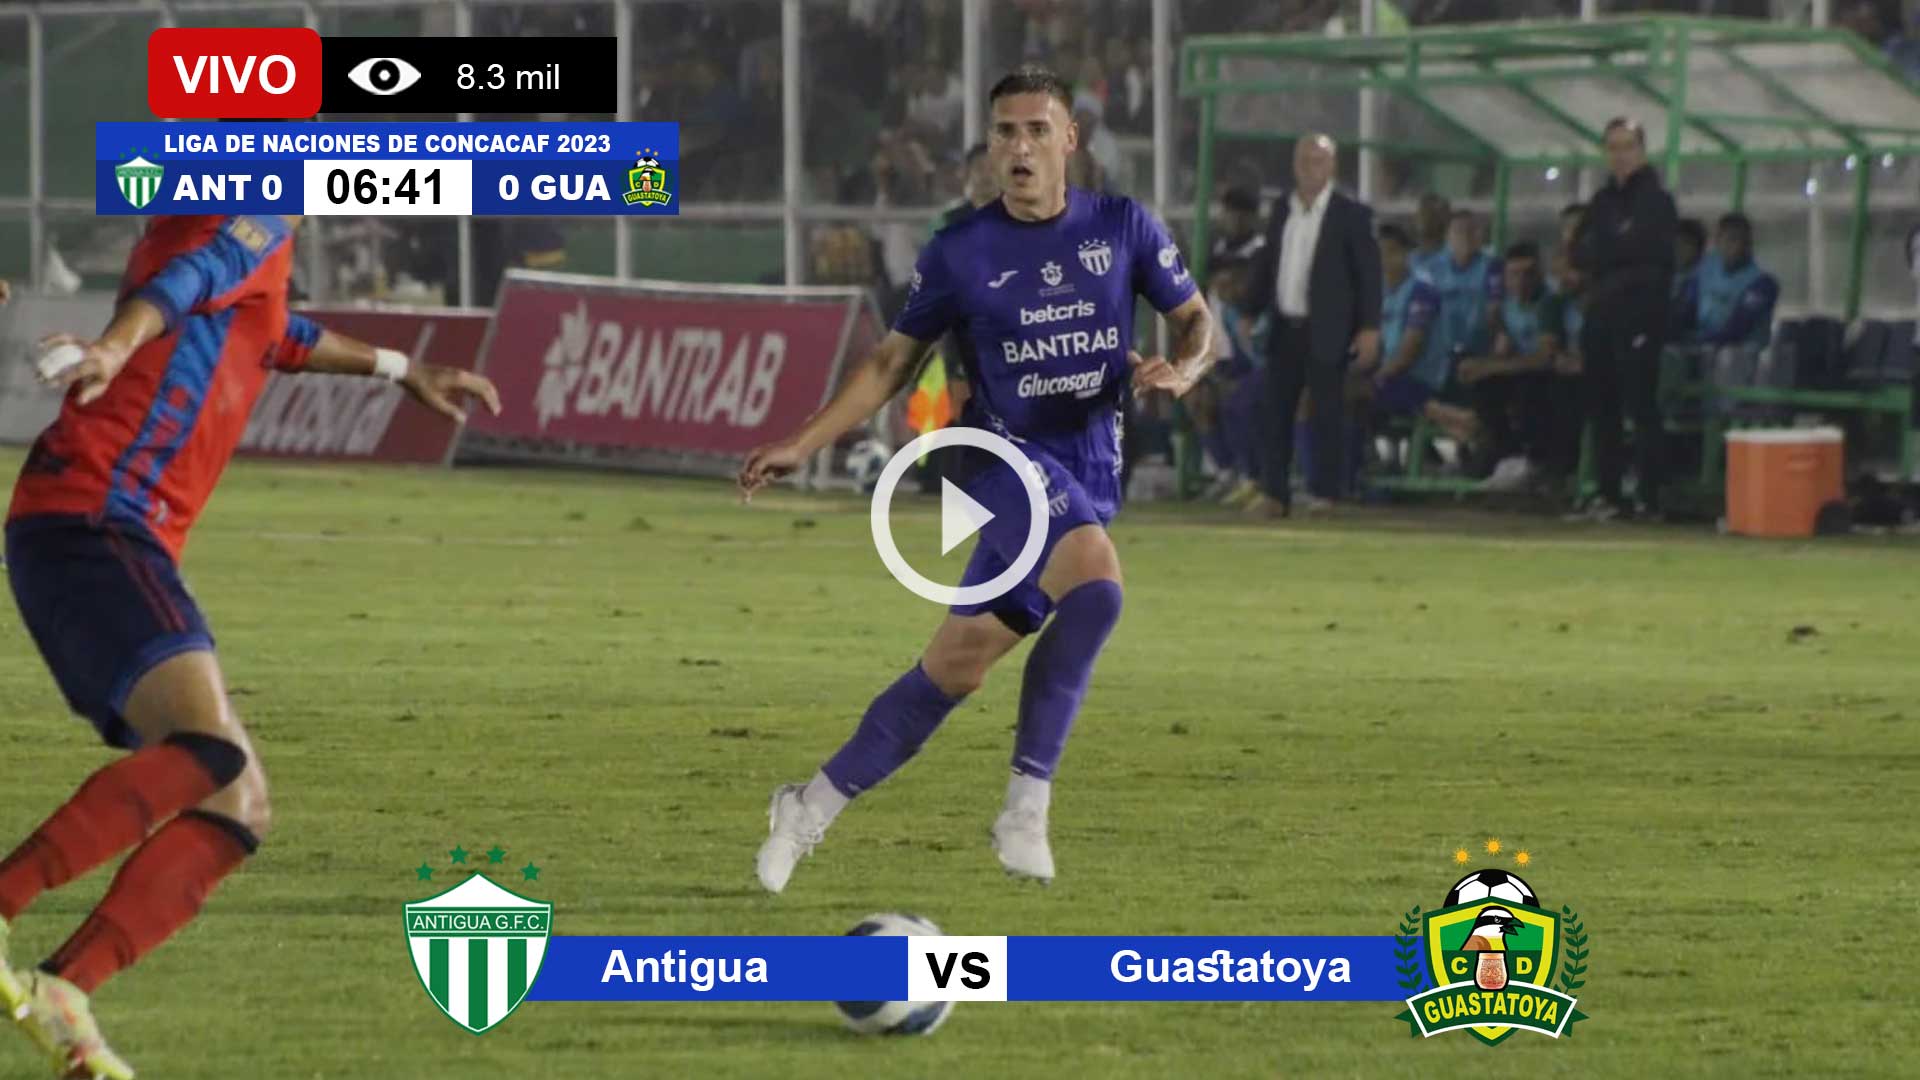 Antigua-vs-Guastatoya-en-vivo-online-gratis-por-internet